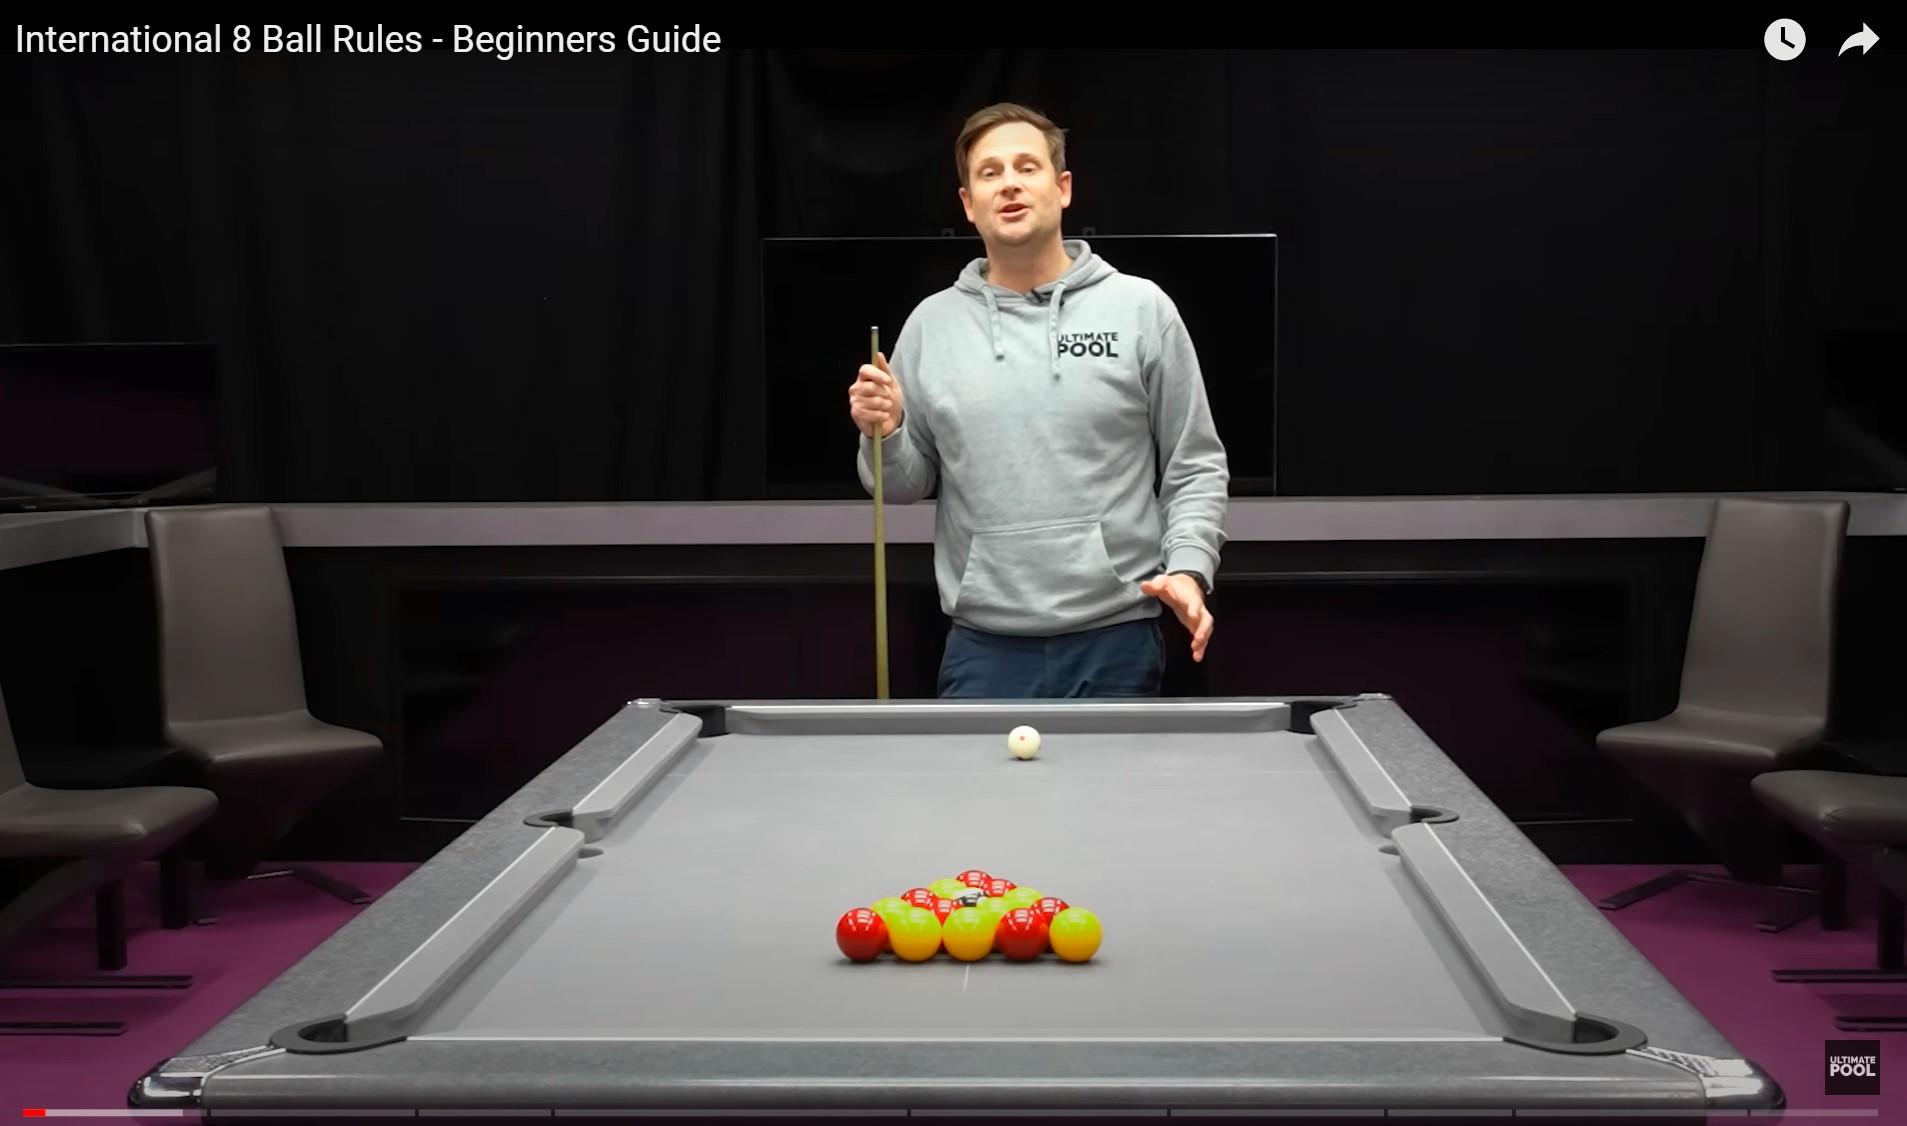 Vencendo Torneio 8 Ball Pool com Técnicas e Táticas – Видео